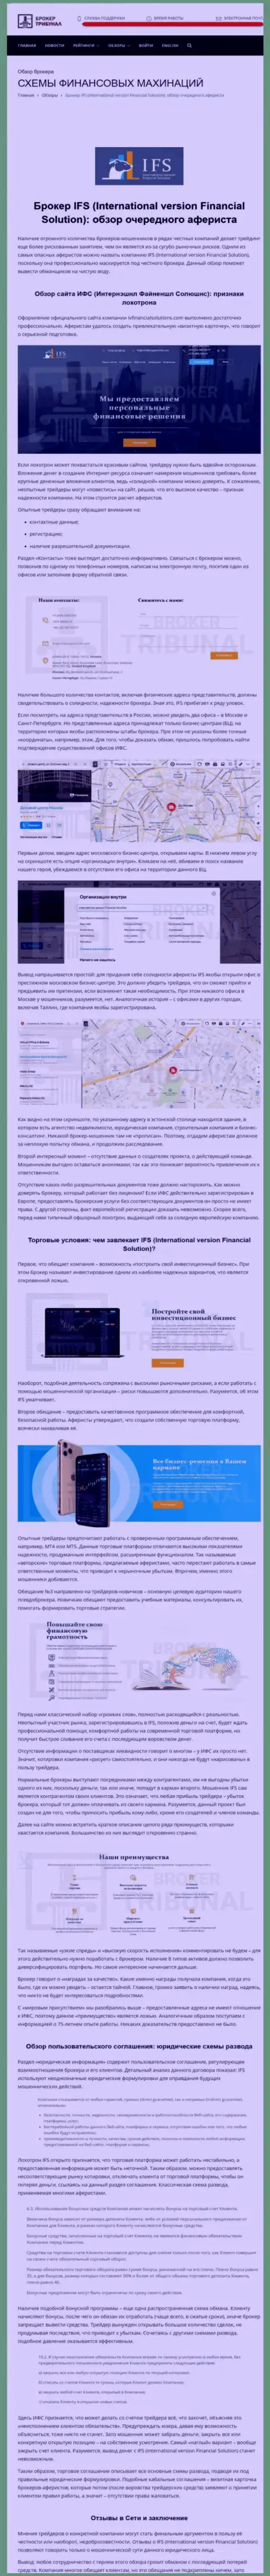 ИВ Файнэншил Солюшинс - это internet-шулера, которым финансовые средства отправлять нельзя ни в коем случае (обзор)